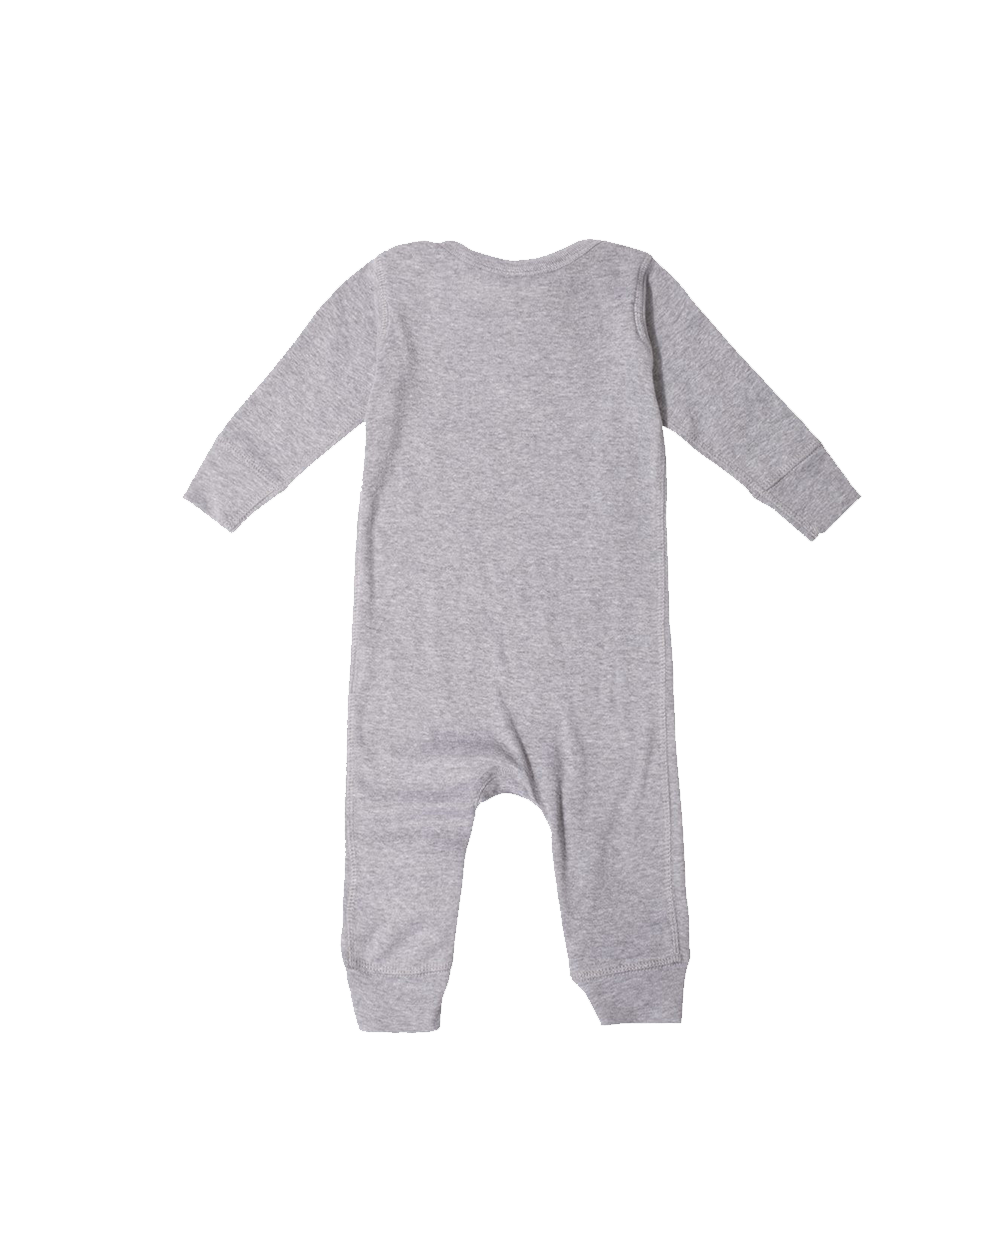 RKFD Infant bodysuit (Heather Grey)